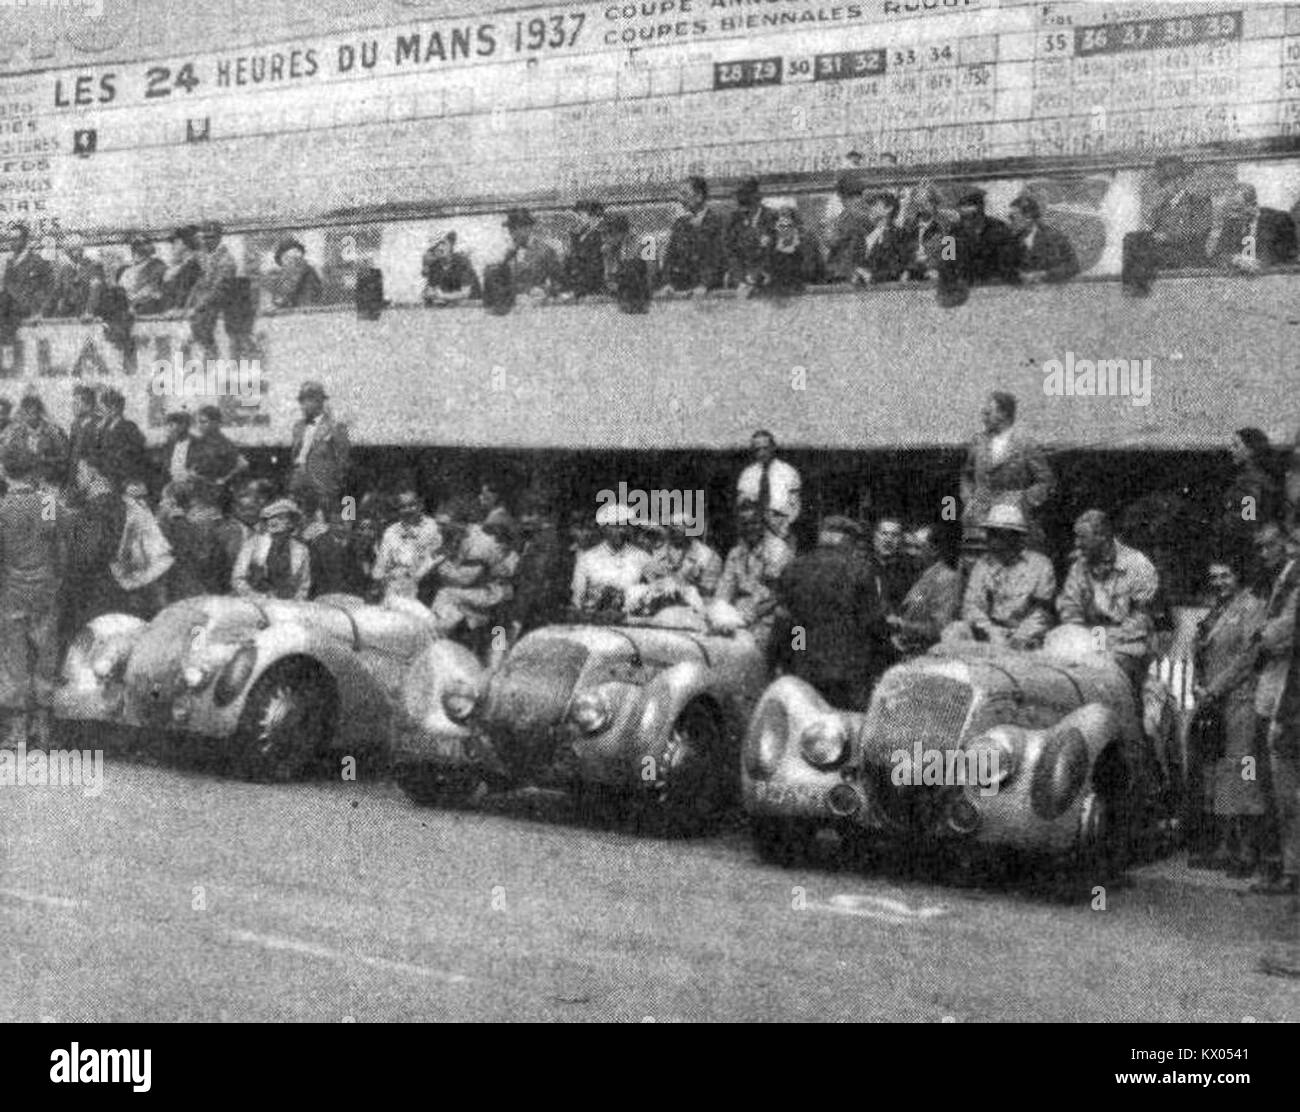 L'équipe Peugeot aux 24 Heures du Mans 1937 (seule complète à l'arrivée) Foto Stock